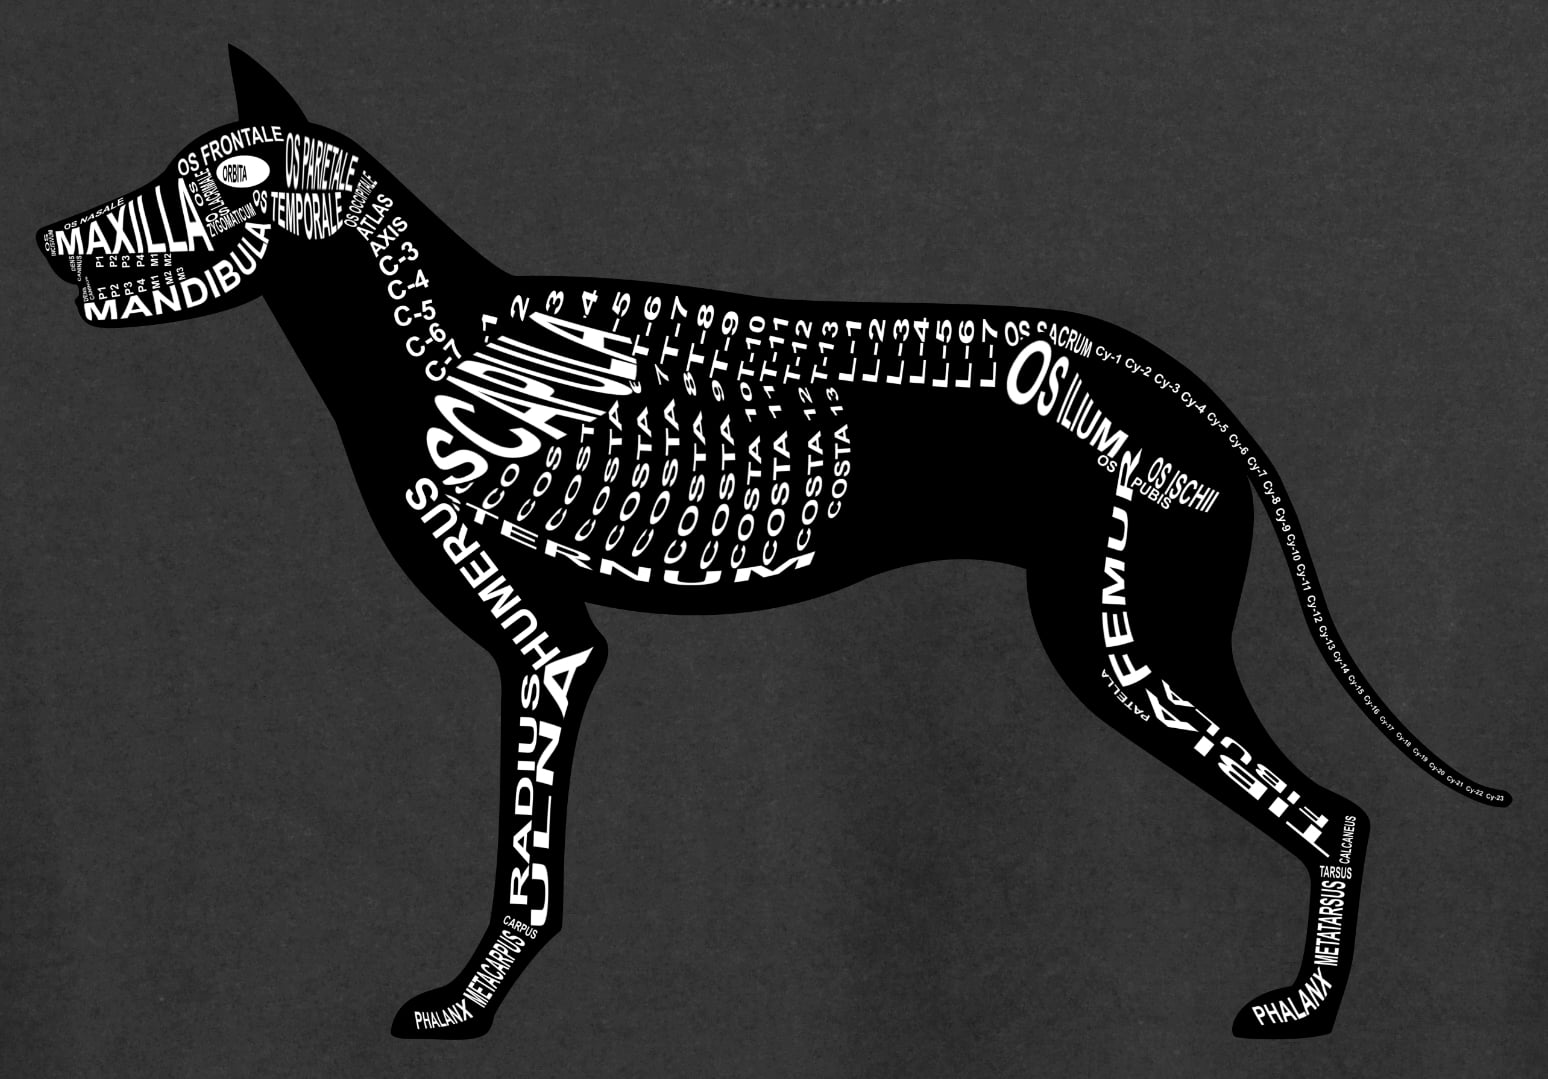 Motiv Hund: Skelett mit anatomischen Bezeichnungen der Knochen für Tierarzt und Tiermedizin-Student - Wort Anatomie